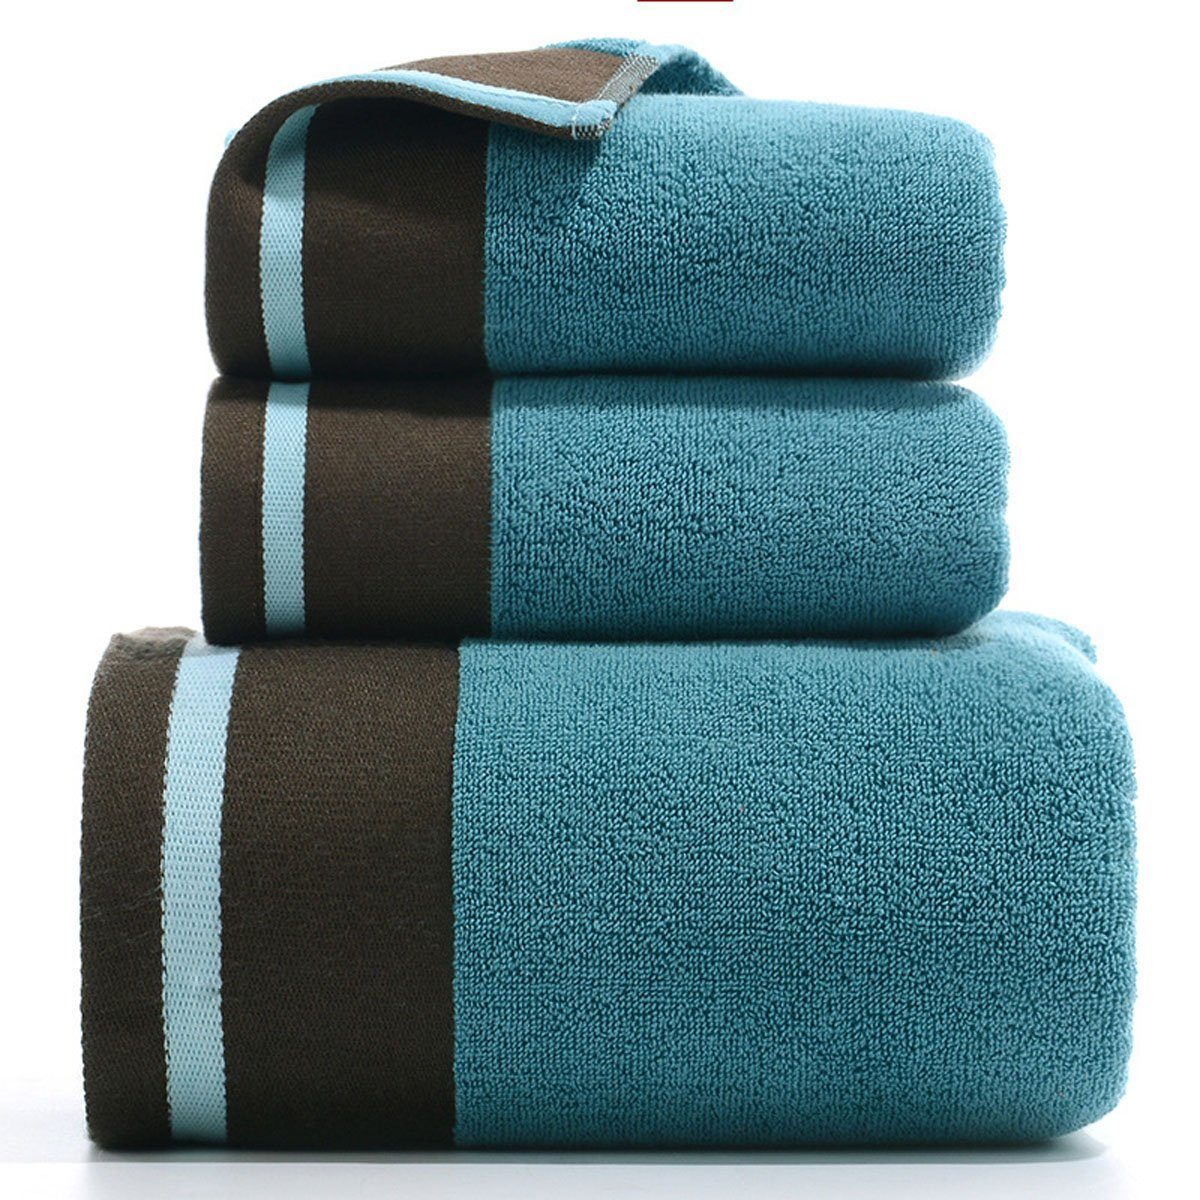 Jormftte Handtuch und Blau Hause weich,für zu Set-2xHandtuch,1xBadetuch,saugfähig Handtücher Set